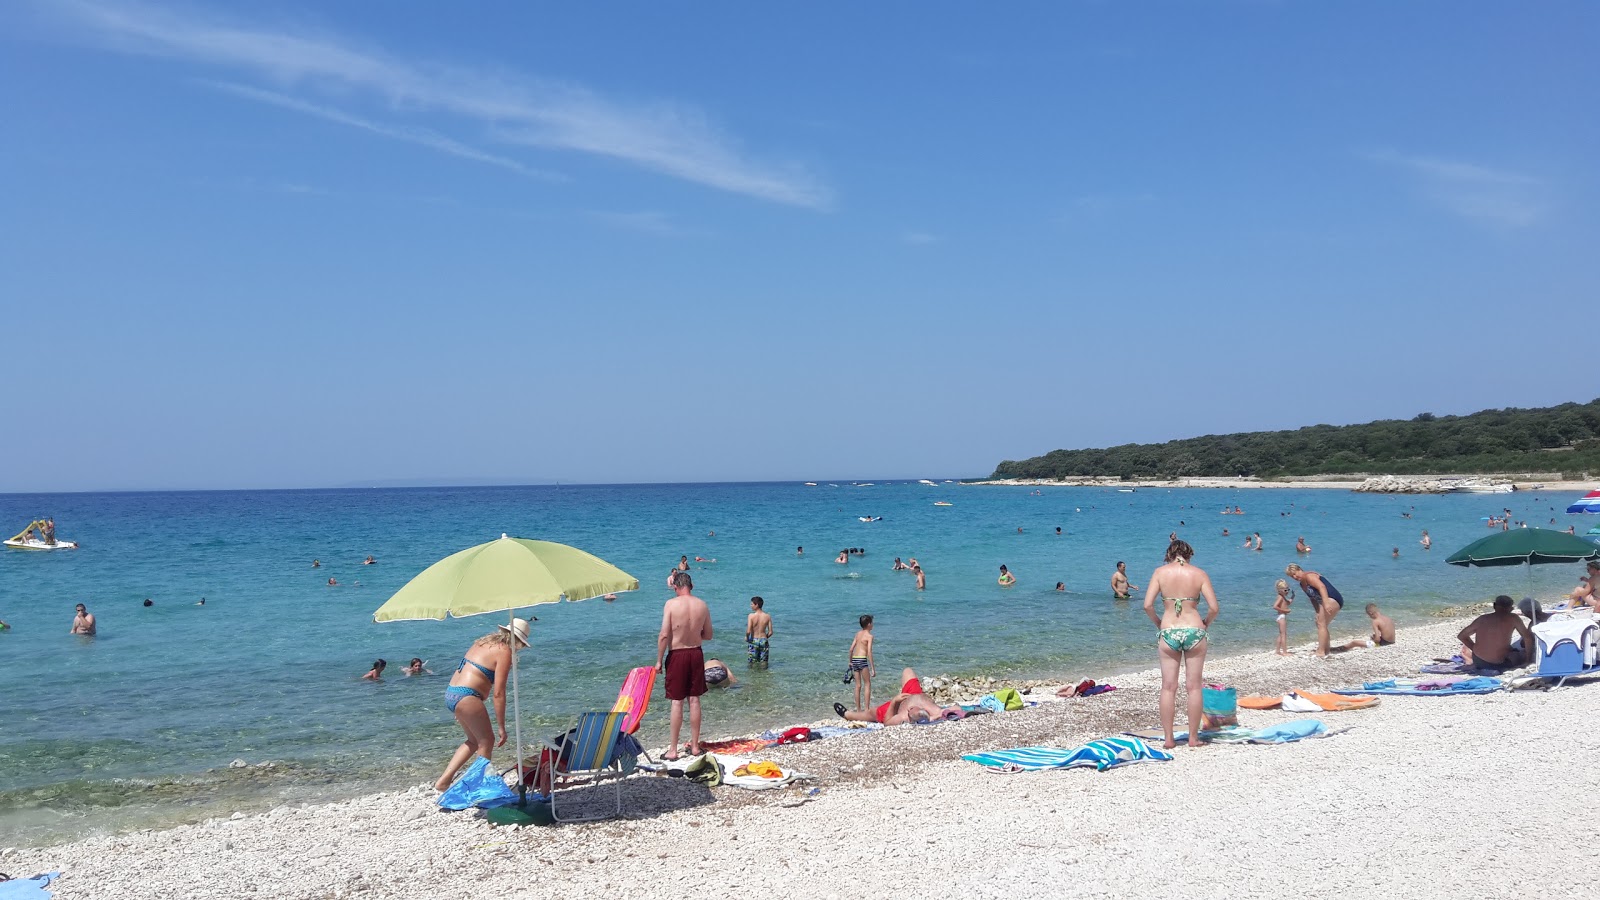 Photo de Gajac II beach - endroit populaire parmi les connaisseurs de la détente